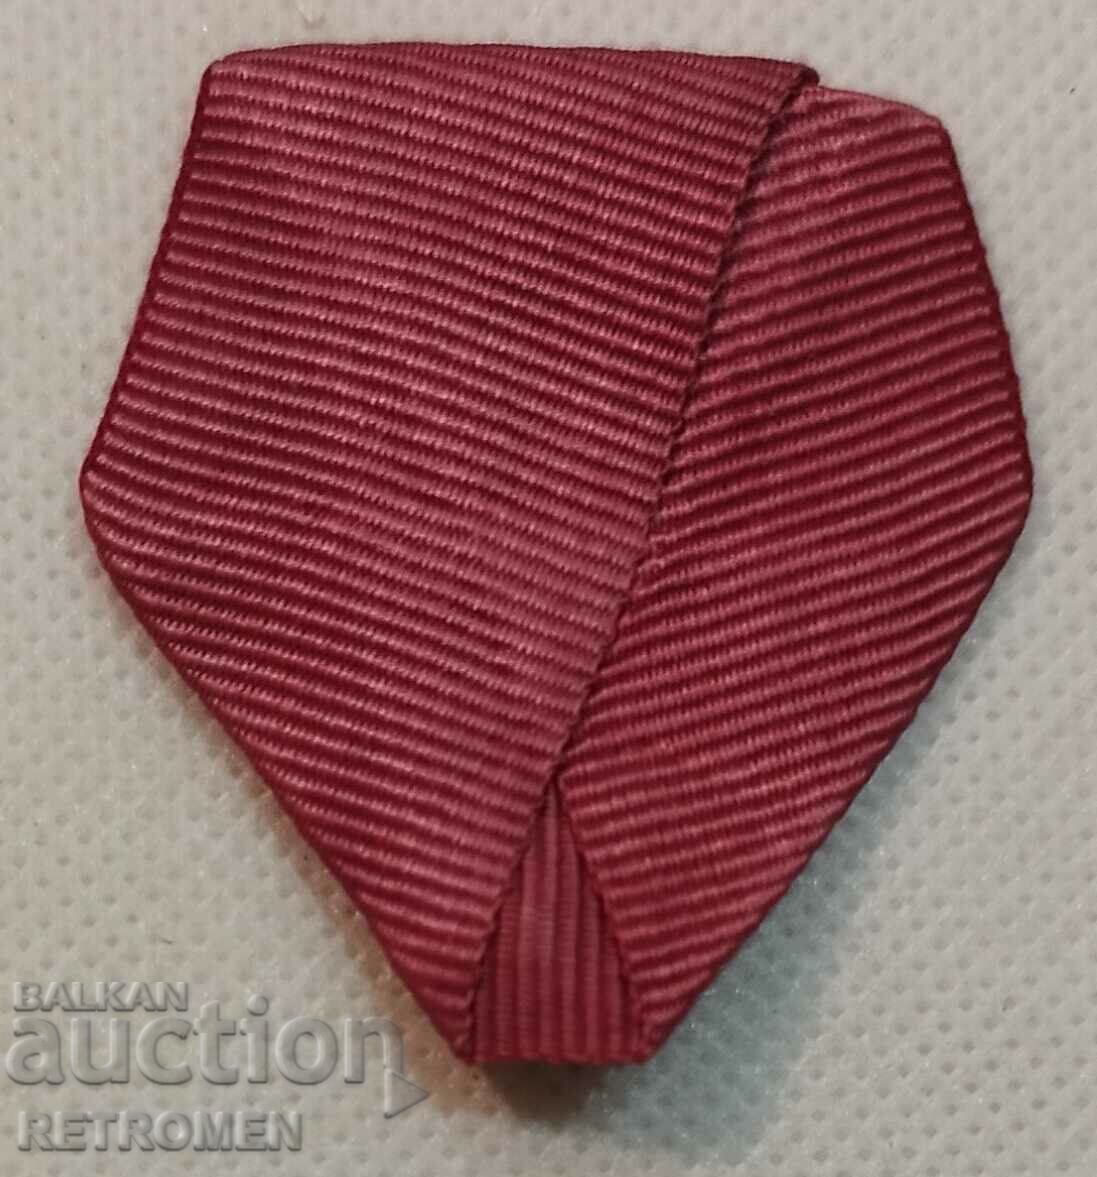 Ribbon for Order of Merit - glove.